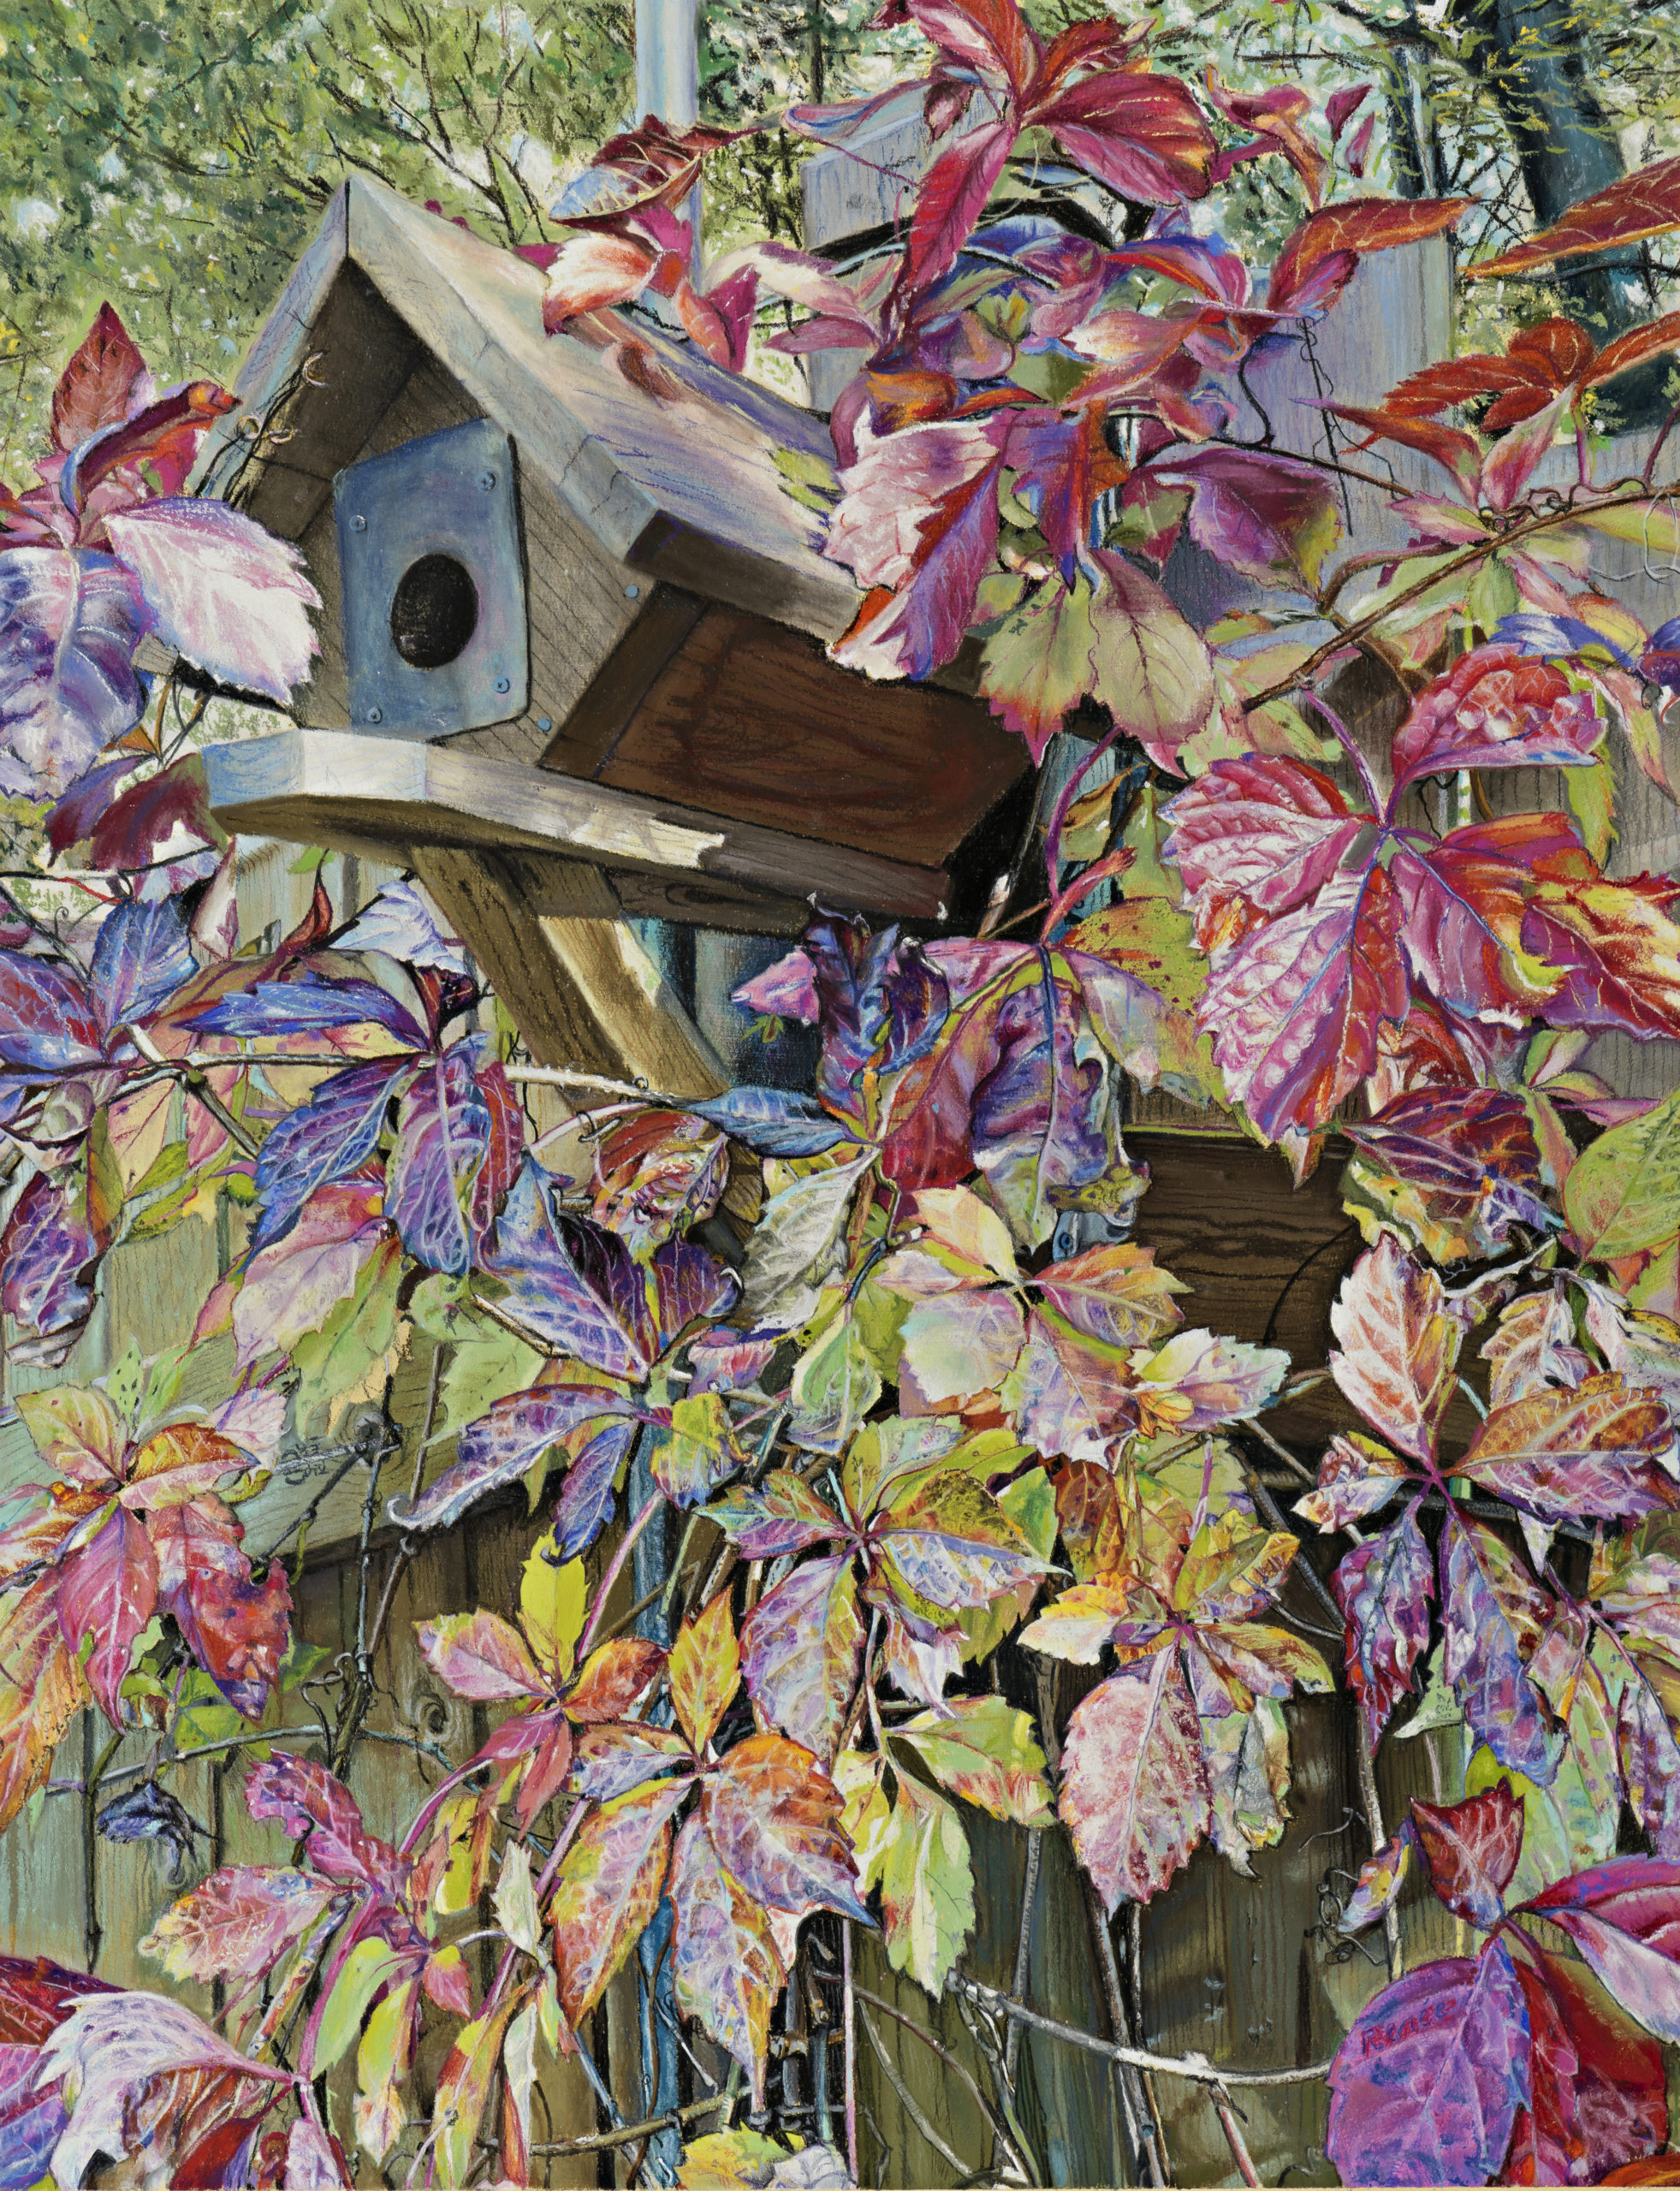 Louise Renée, "Autumn Sanctuary," pastel, 27 x 21 in.